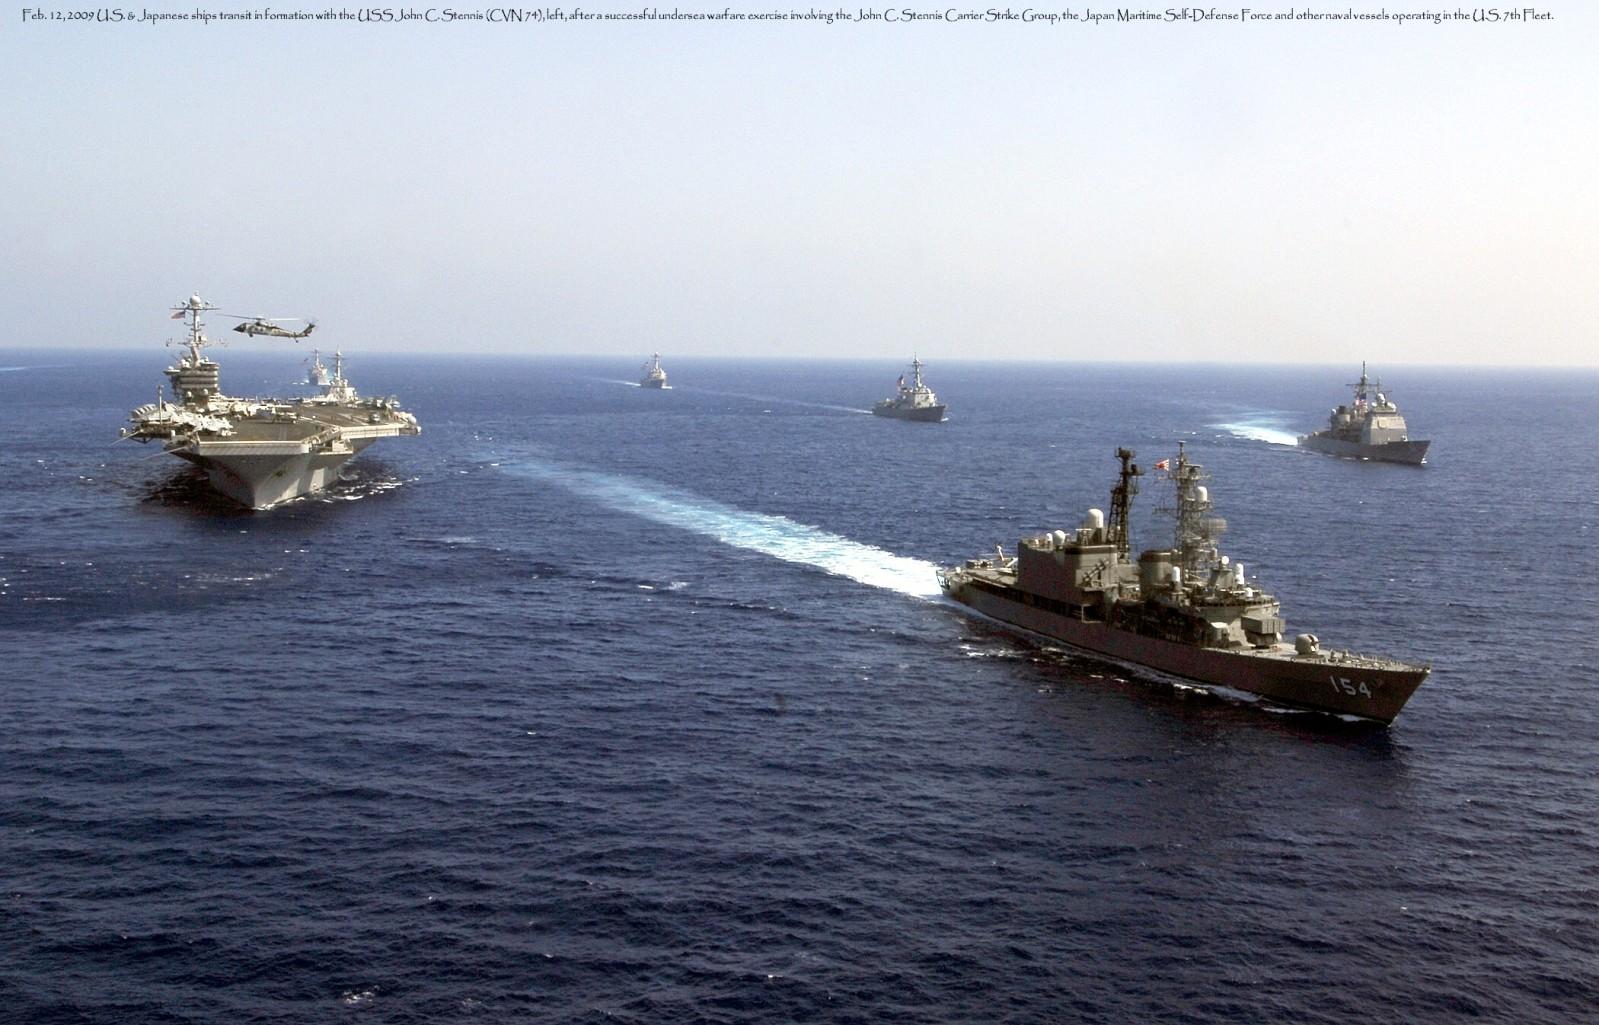 美航母战斗群进入南海 专家称对中国发明确信号-搜狐